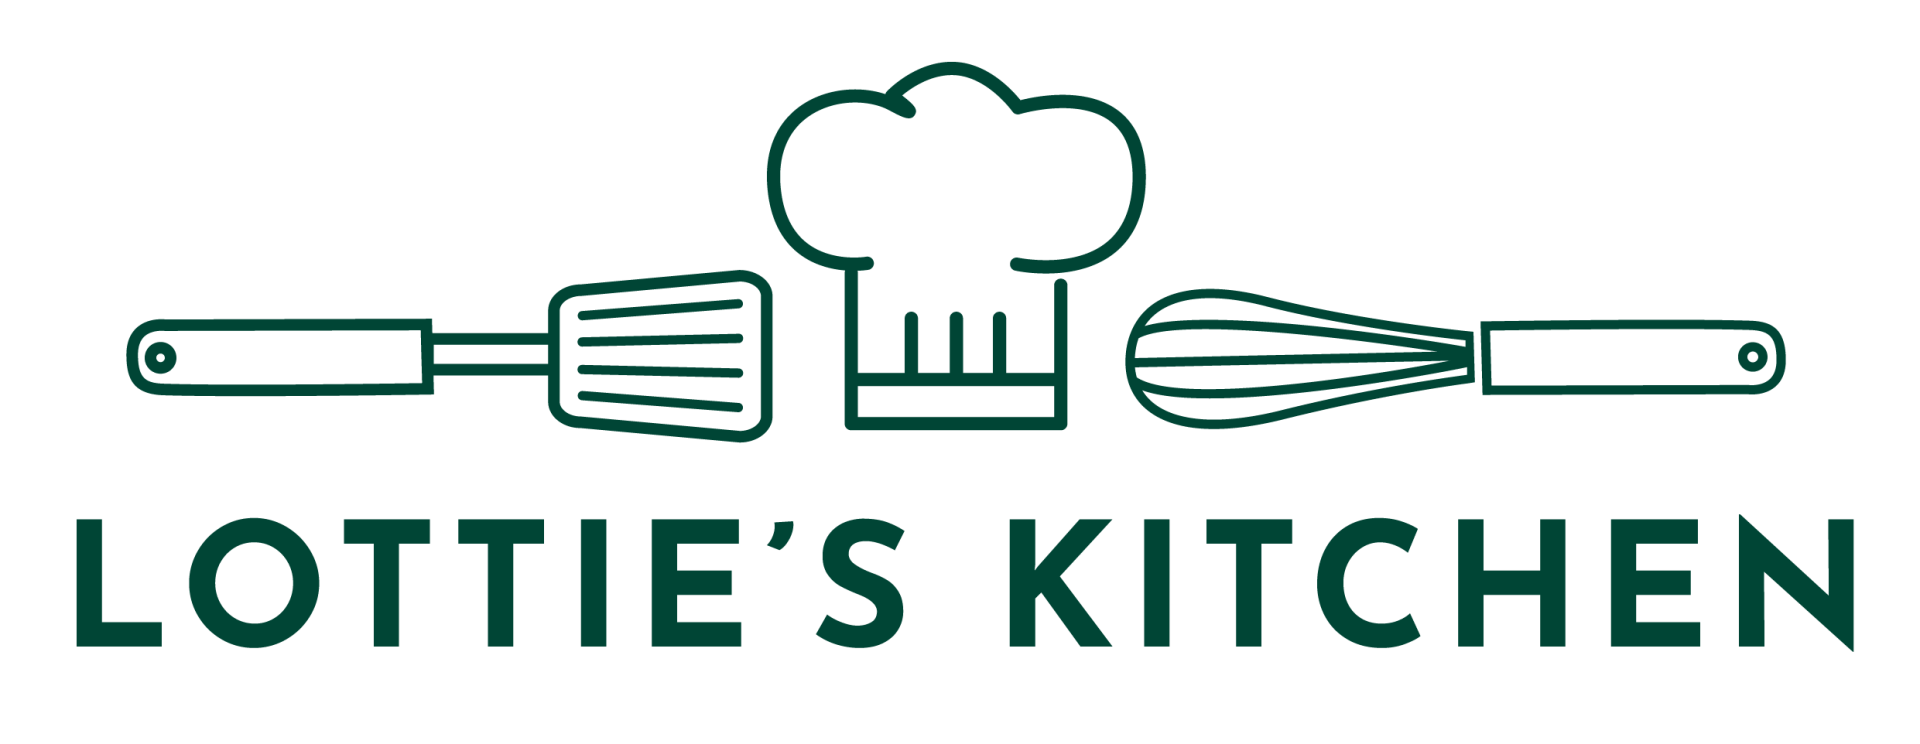 Lotties Kitchen logo